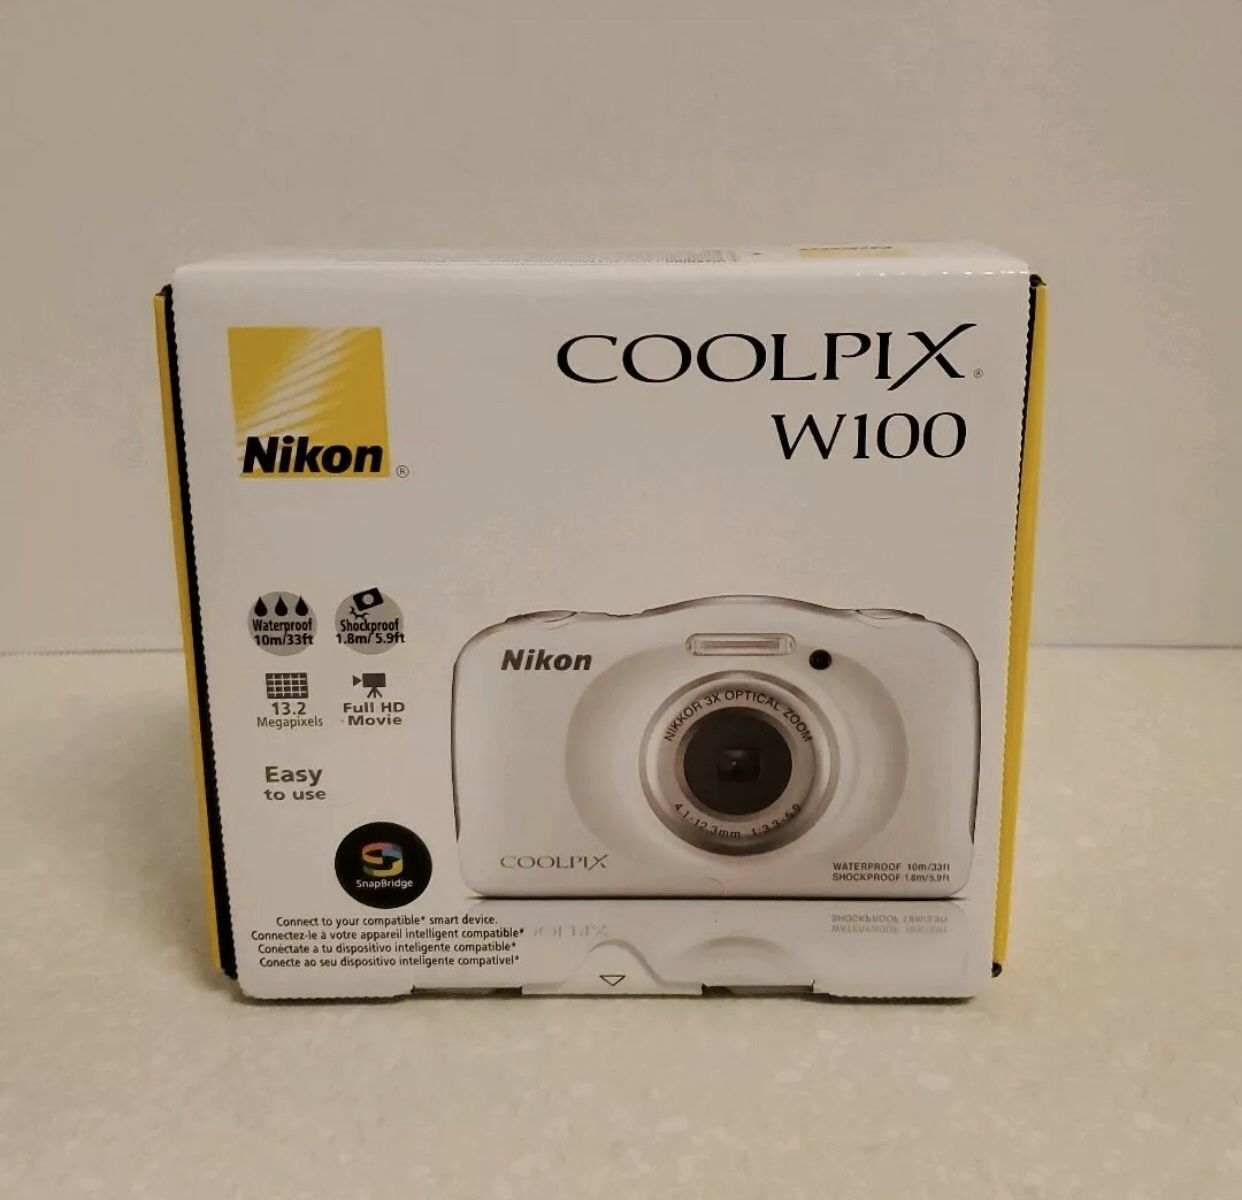 Nikon COOLPIX W100 13.2 MP Digital Camera - White.